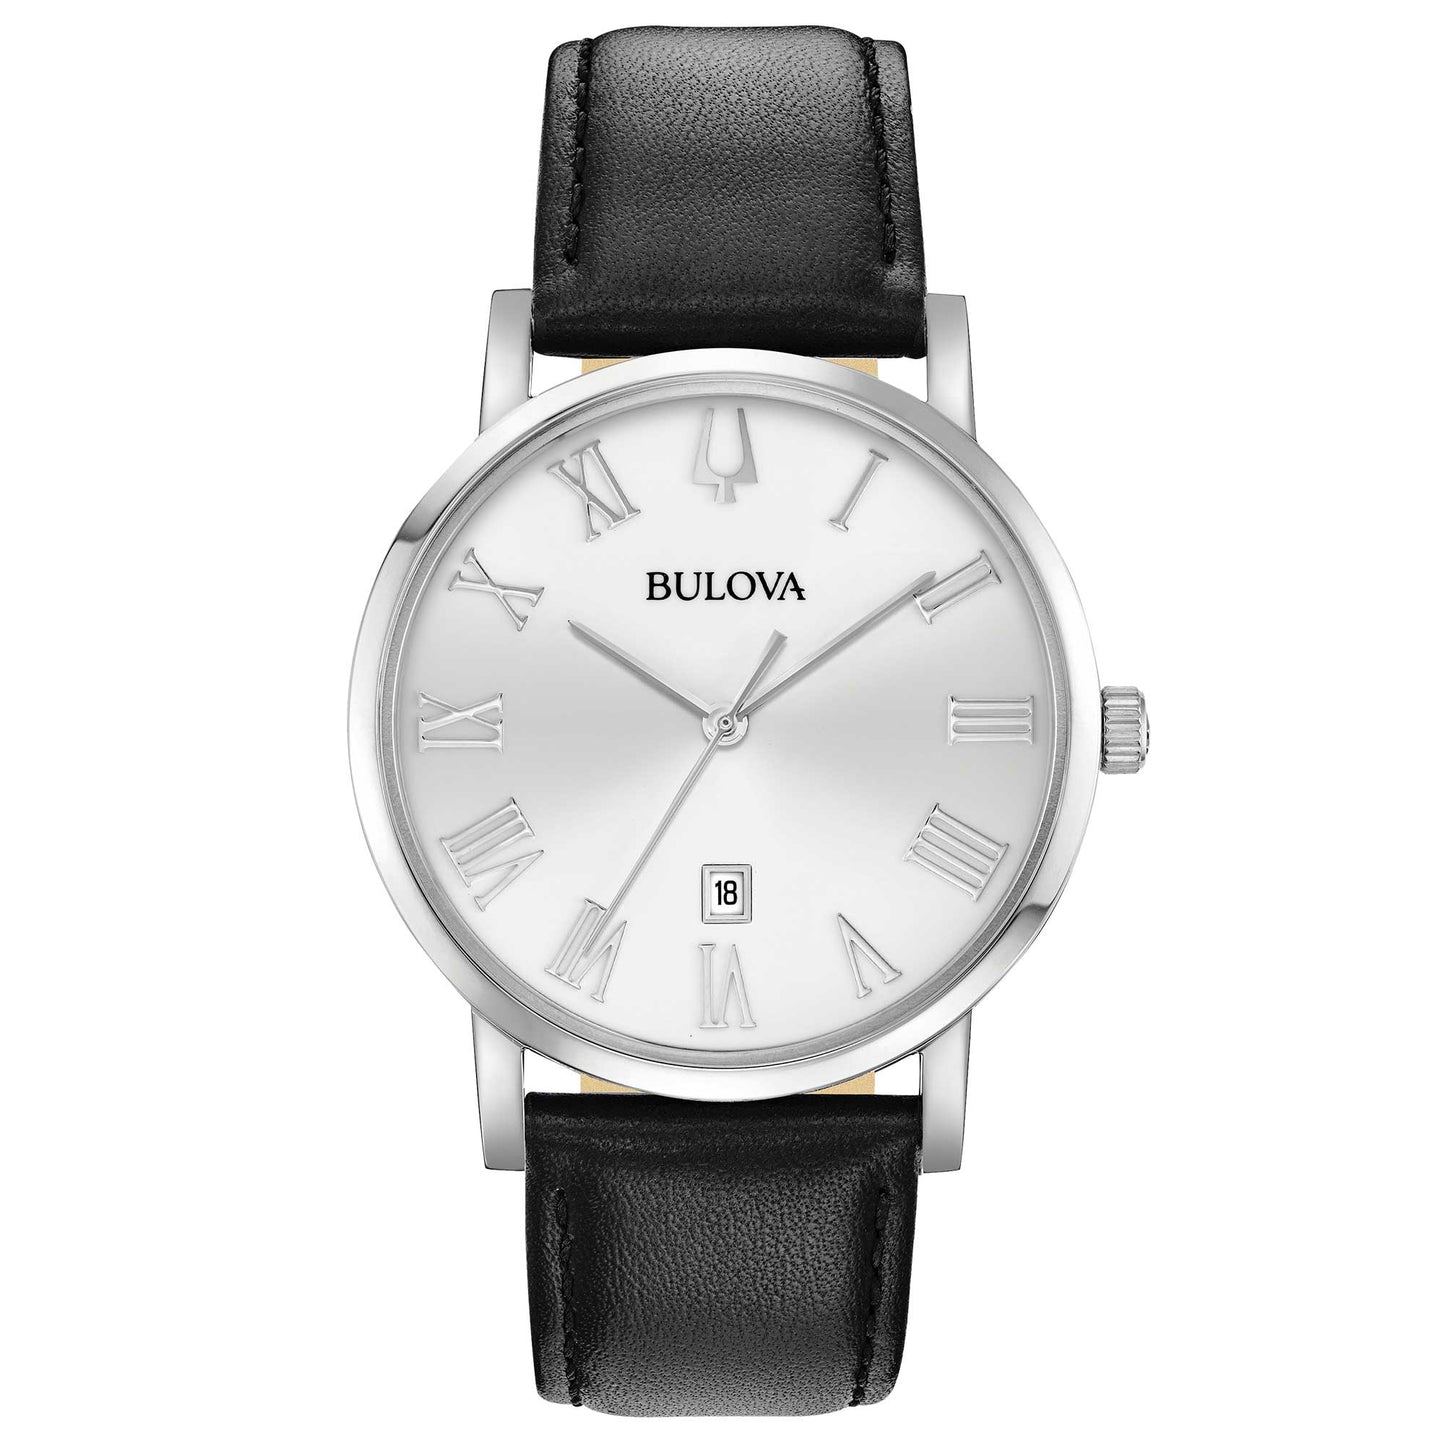 Bulova - Clipper watch